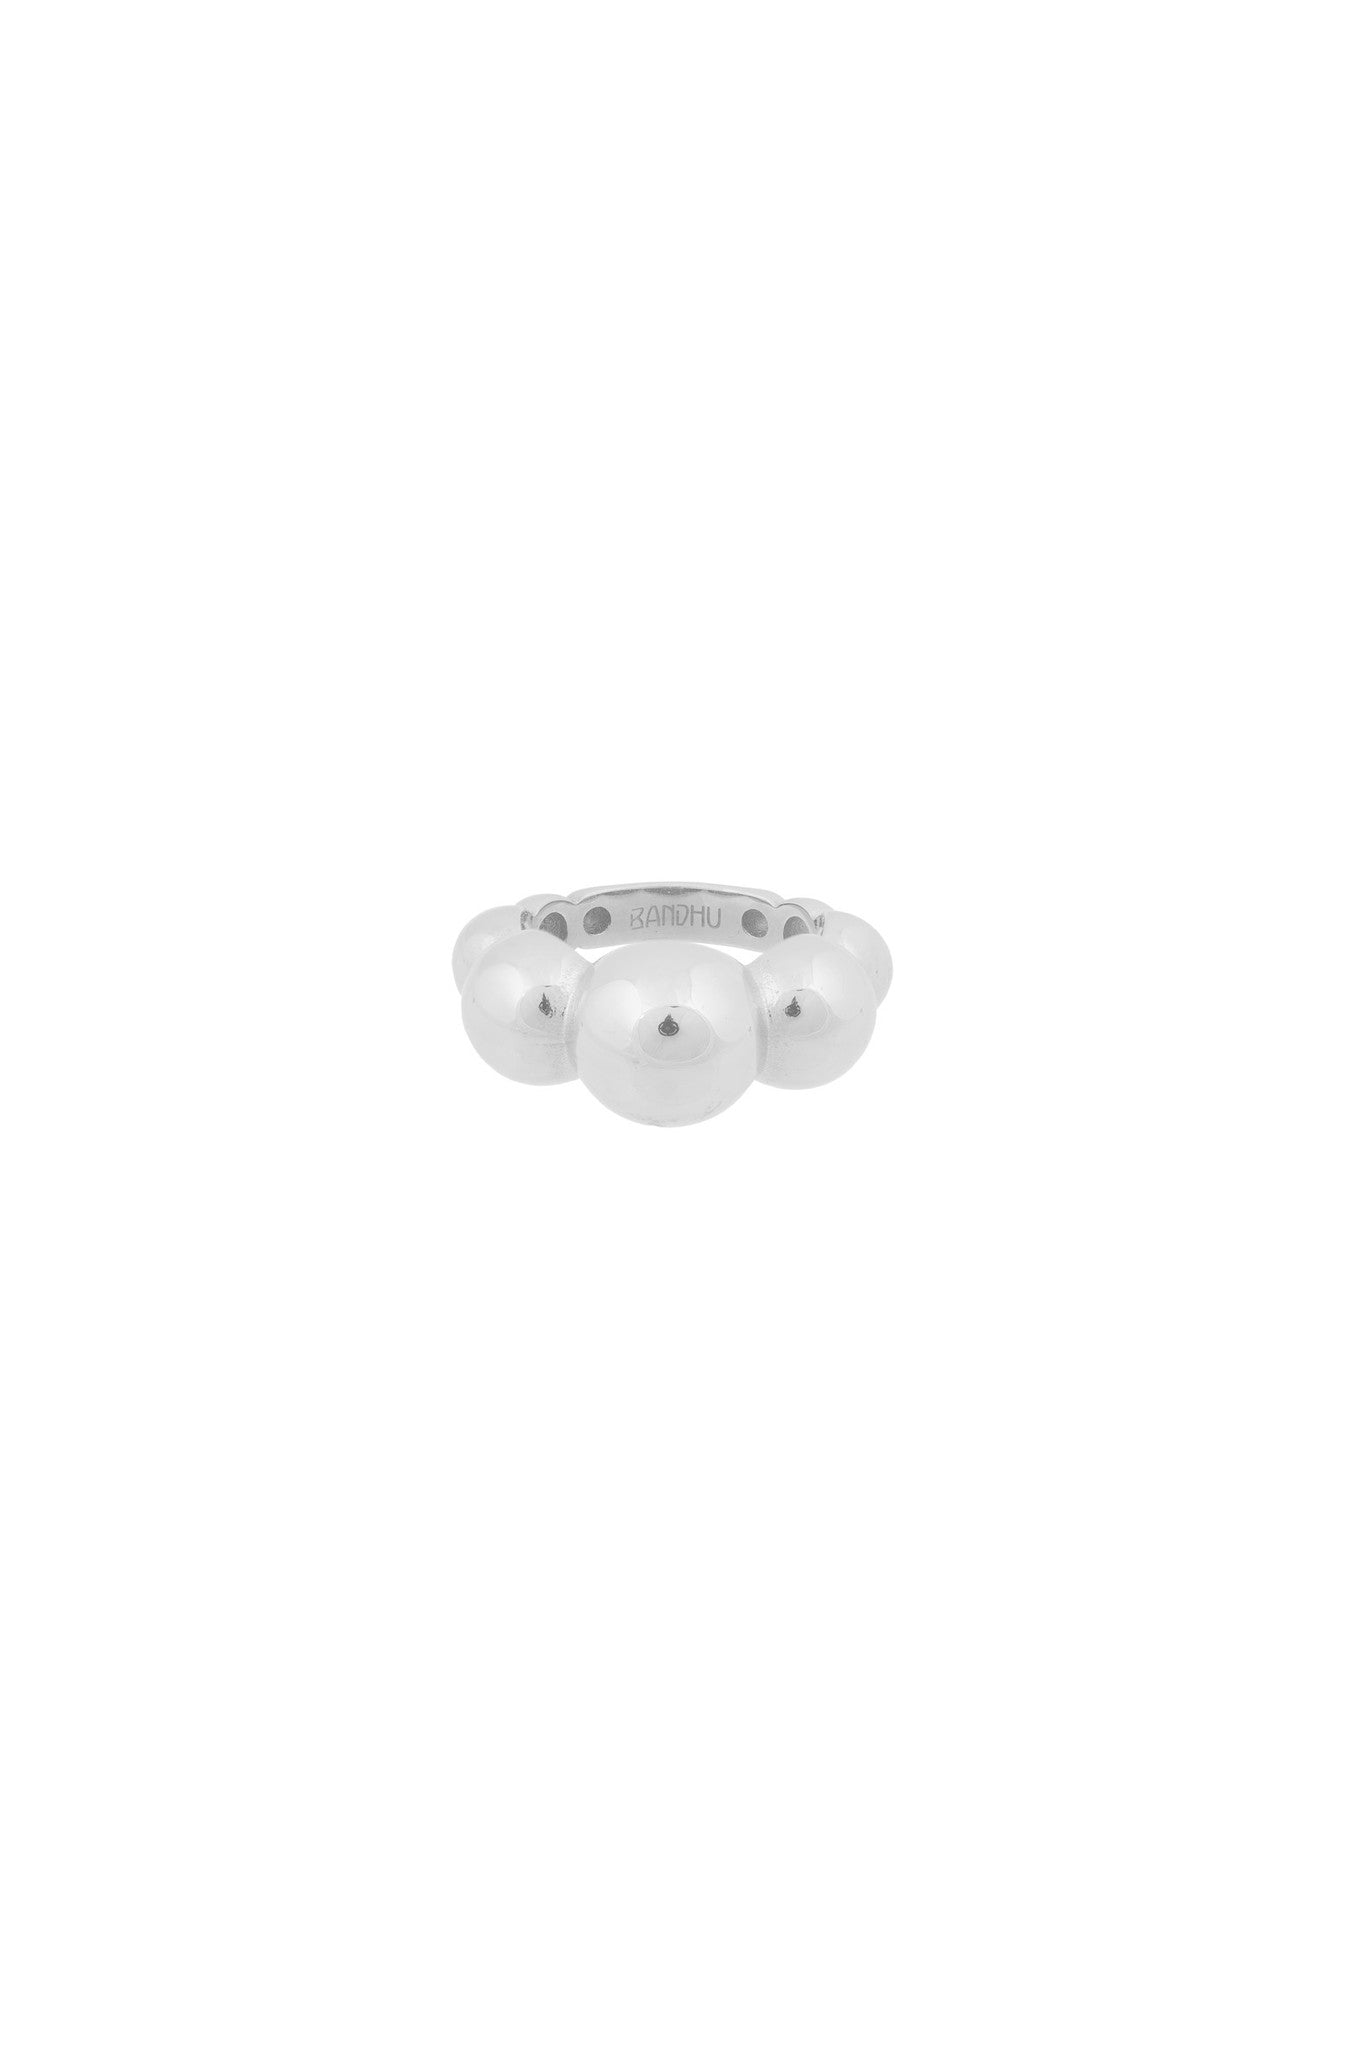 Bandhu Dot Ring Silver